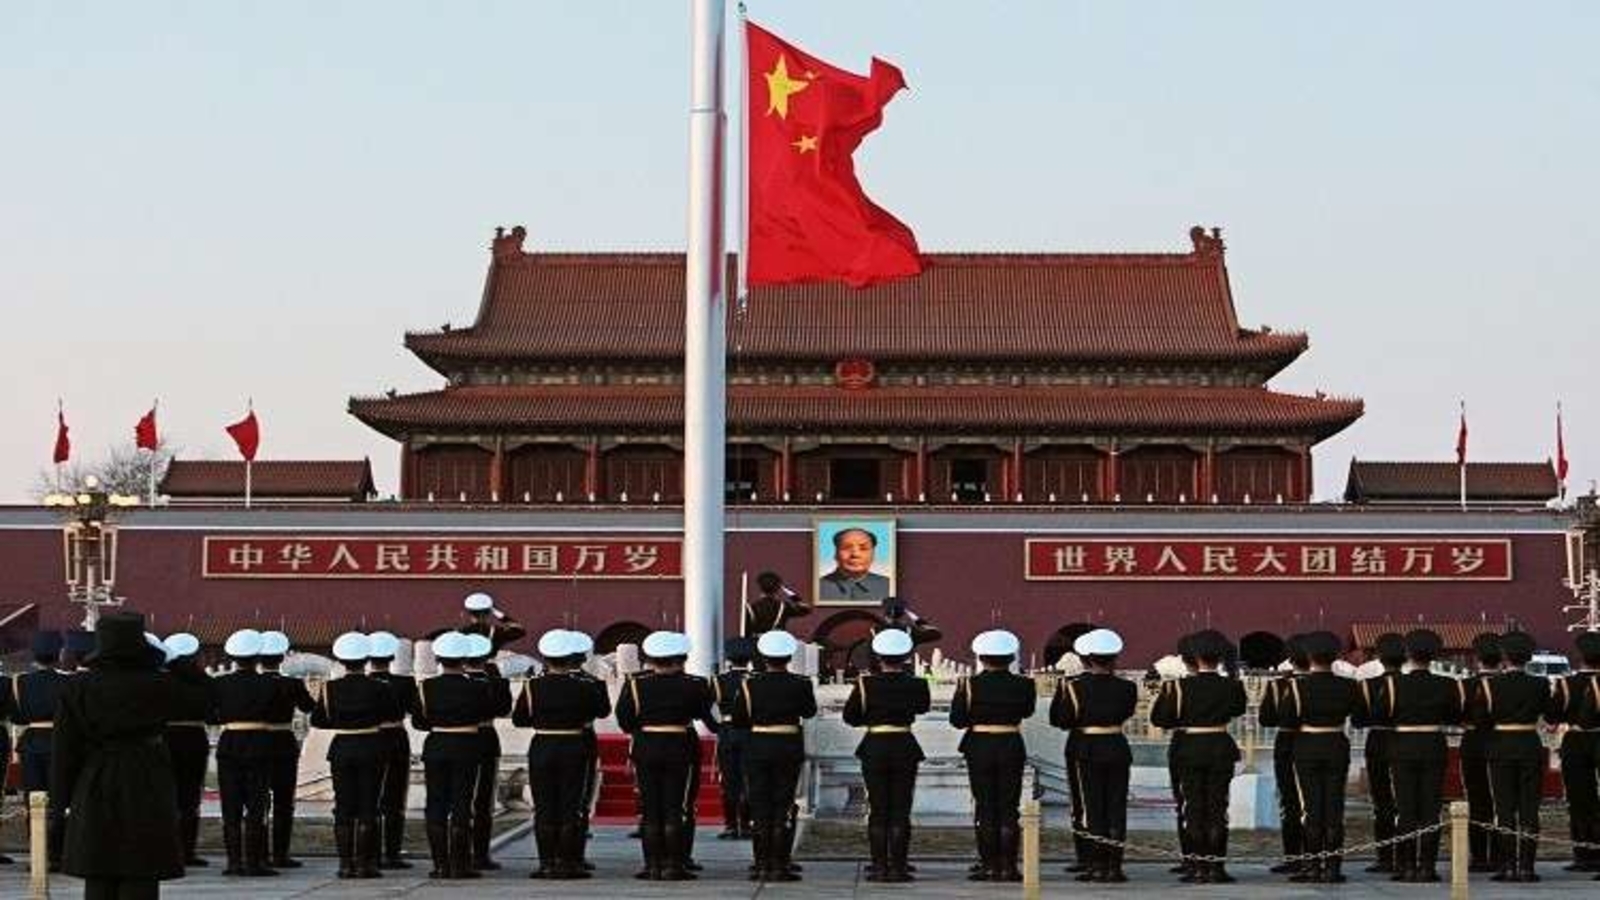 الدفاع الصينية تؤكد على تعاونها مع الجيش الروسي